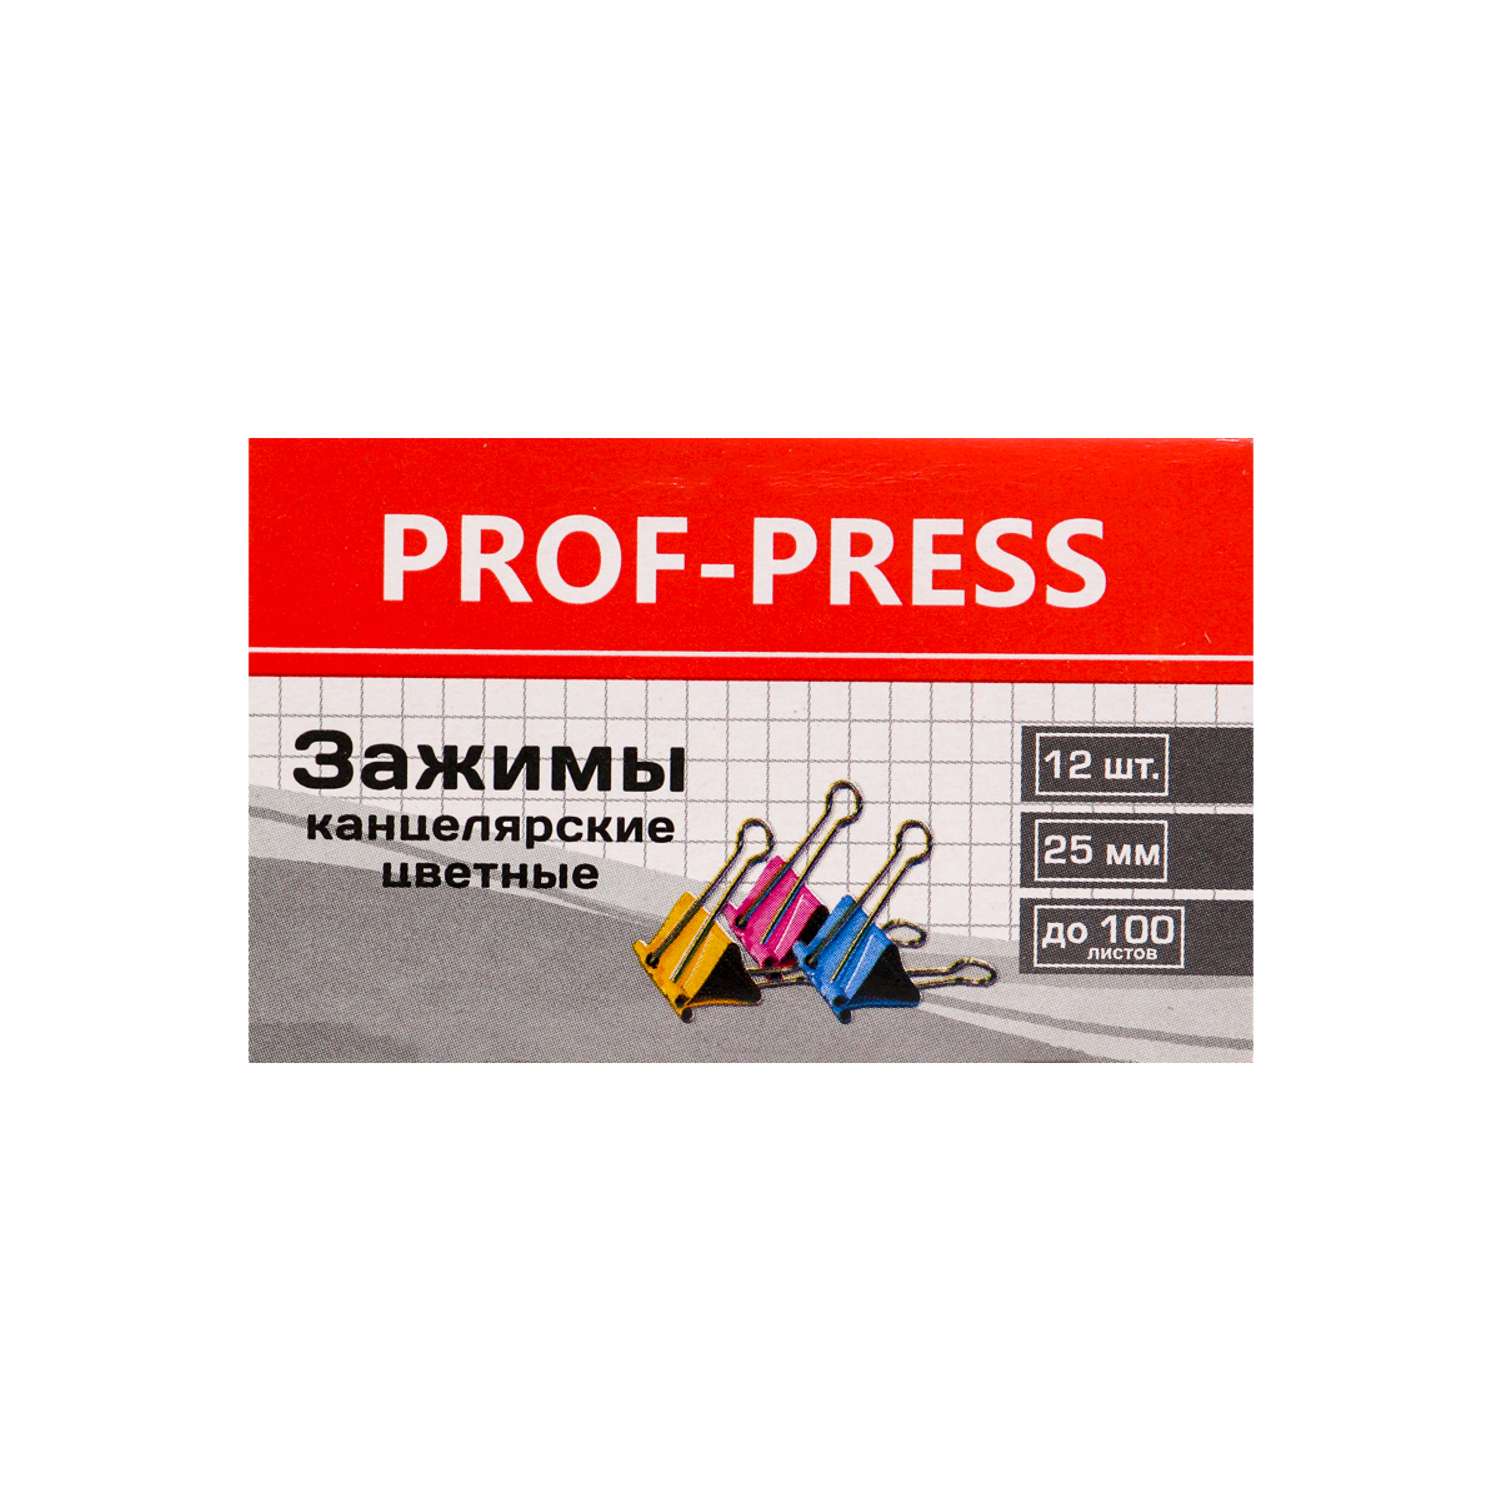 Зажим для бумаг Prof-Press цветной 25мм набор 12шт в карт коробке - фото 2